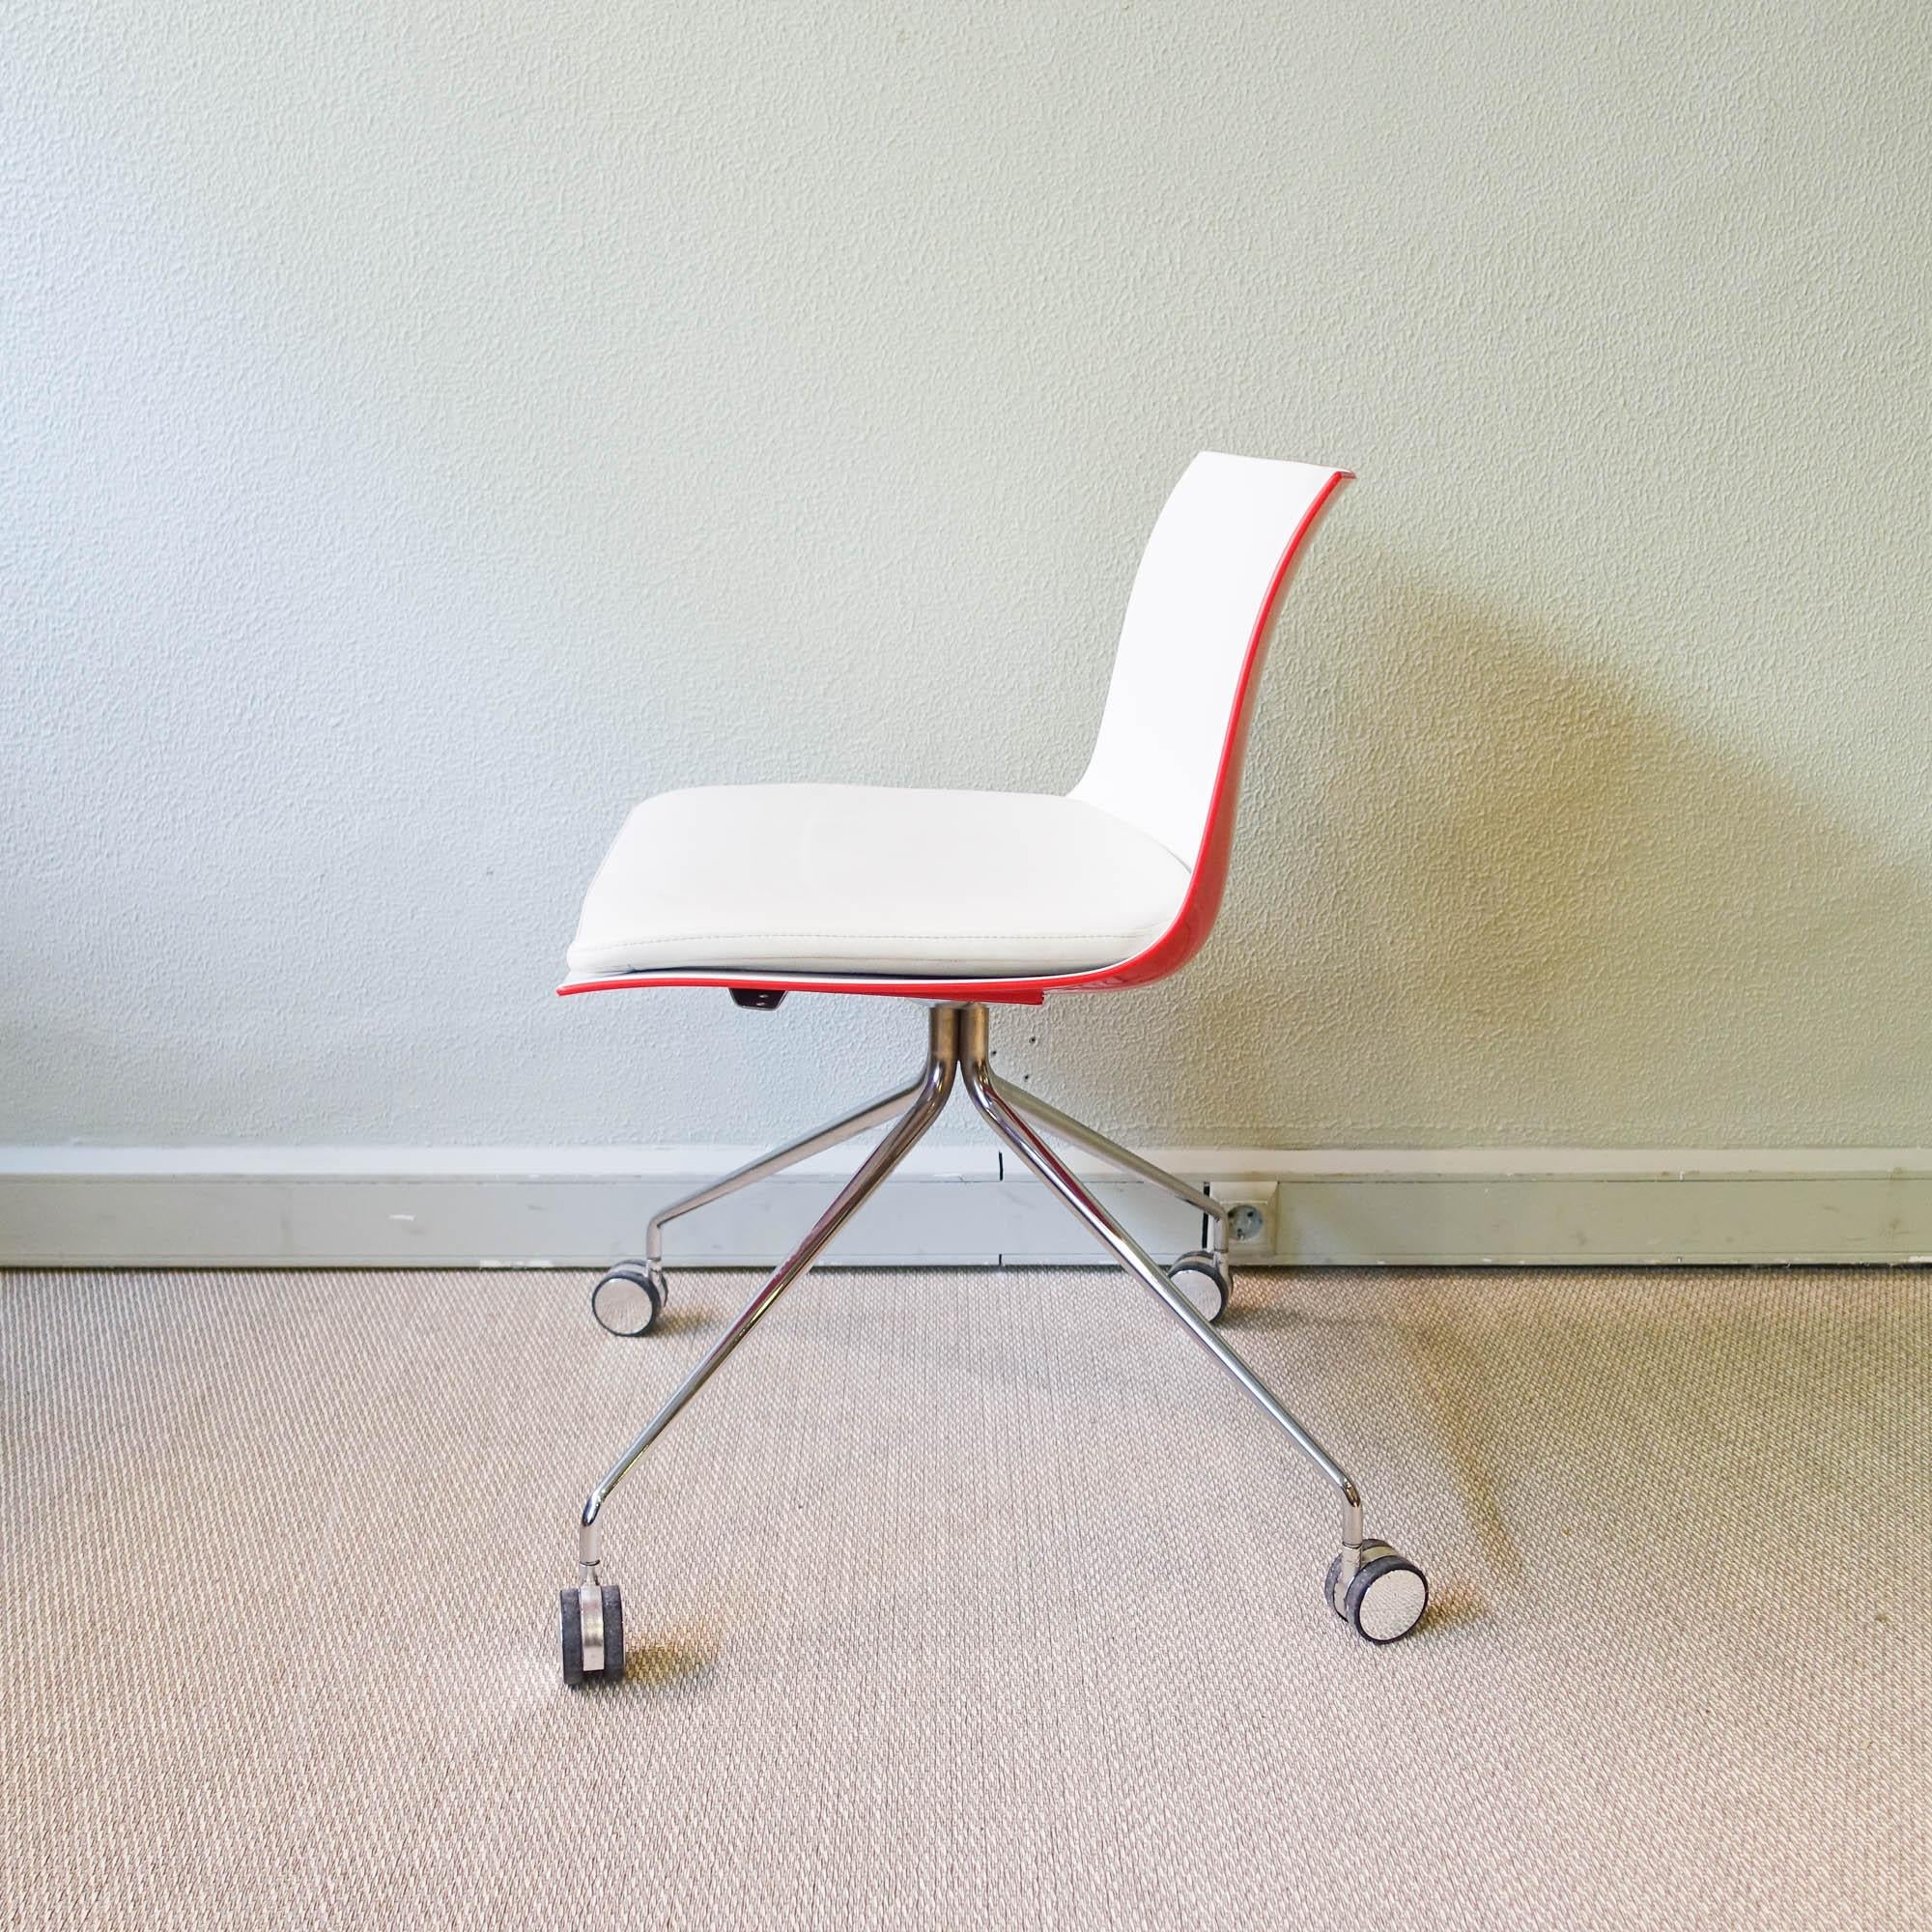 Dieser Stuhl, Modell Catifa, wurde von Lievore Altherr Molina für  Arper, in Italien, im Jahr 2004.  Er hat eine zweifarbige Schale aus Polypropylen, außen rot und innen weiß, die auf vier Füßen mit Rädern aus verchromtem Metall steht. Er hat das